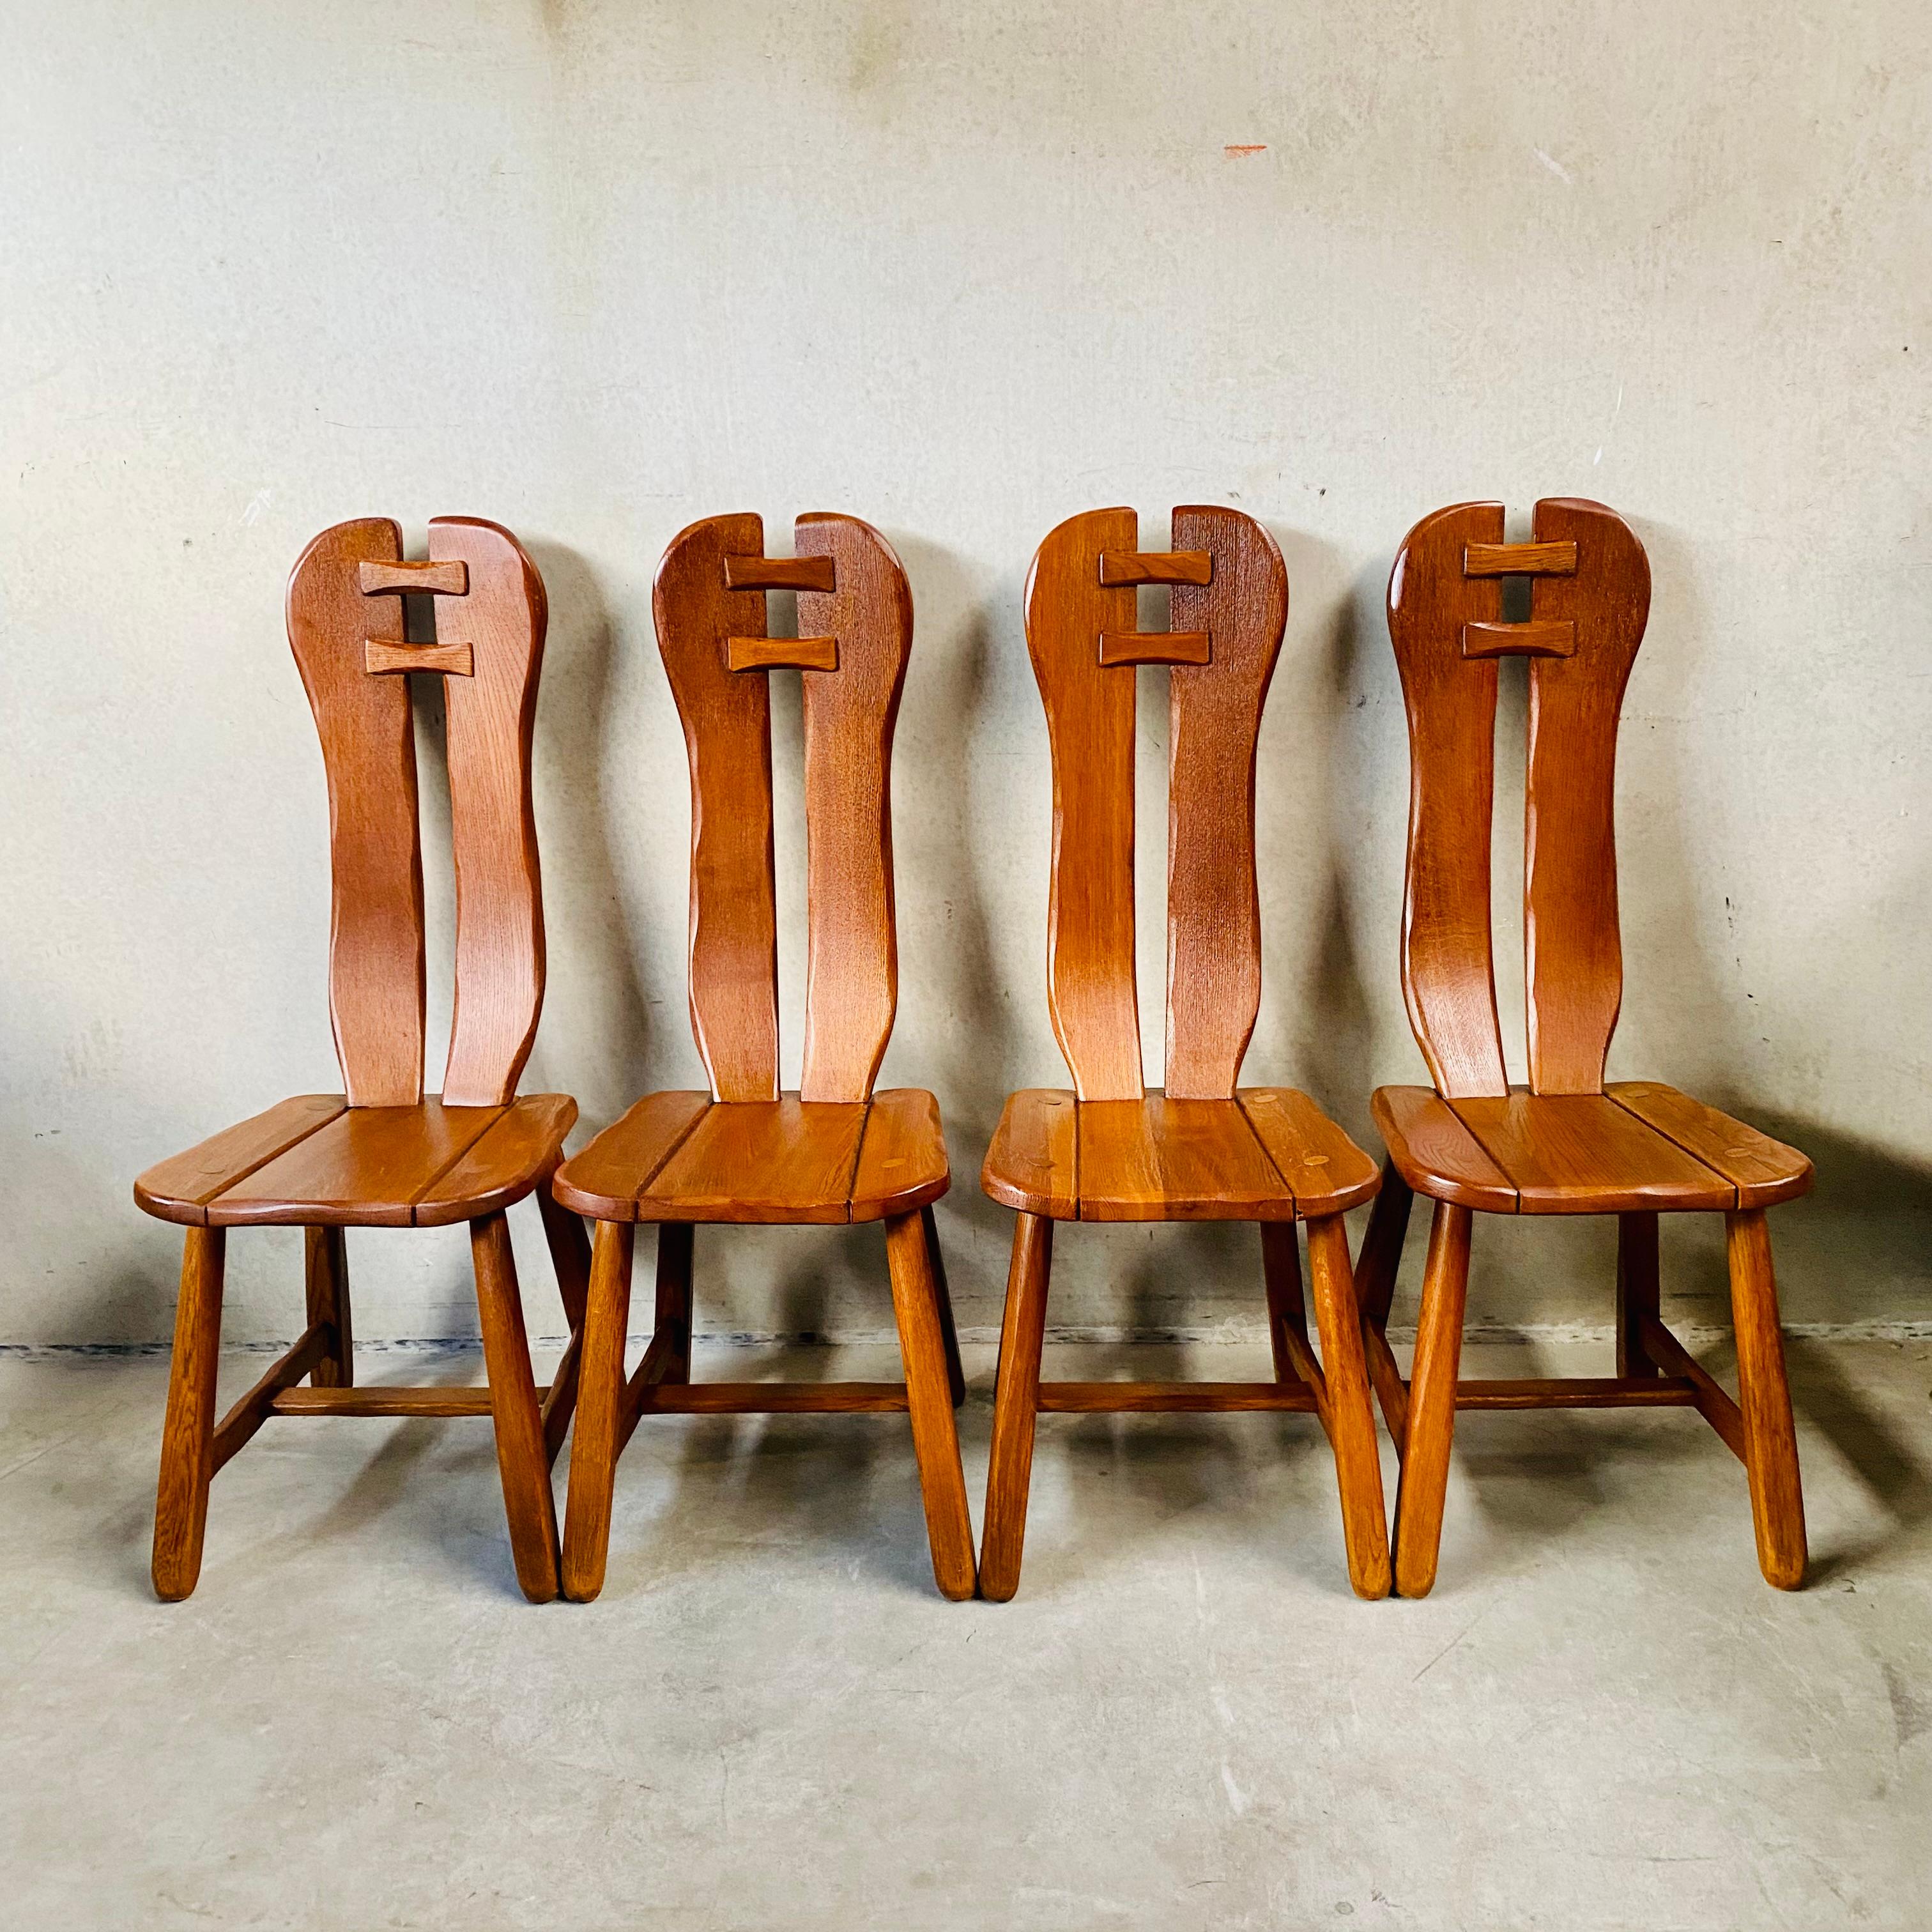 Vous recherchez des chaises de salle à manger uniques et élégantes pour donner du caractère à votre maison ? Ne cherchez pas plus loin que les chaises à manger d'art en chêne massif brutaliste de Kunstmeubelen De Puydt, fabriquées en Belgique dans